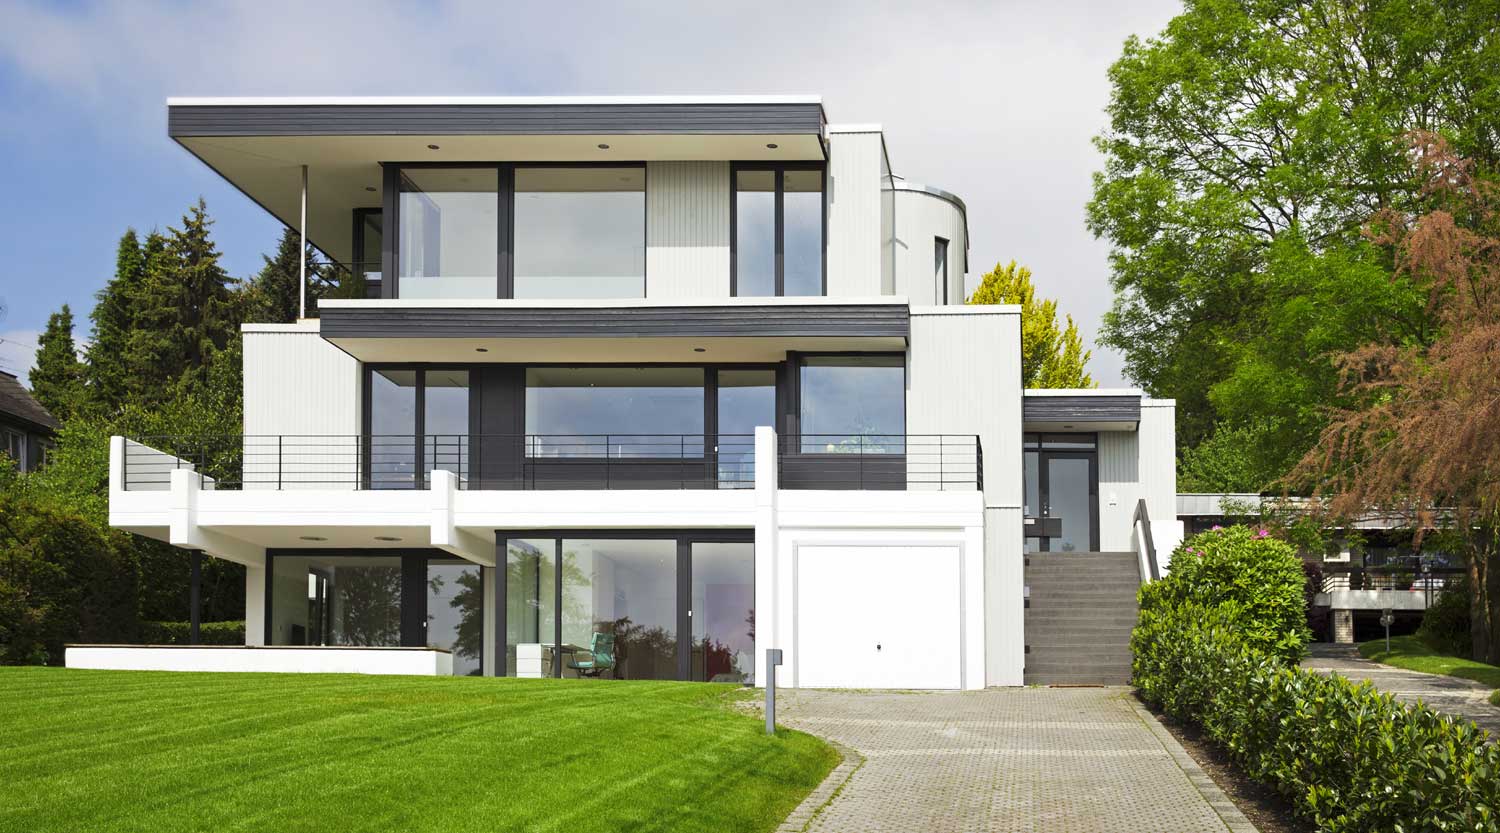 heiderich-architekten-luenen-einfamilienhaus-s-herdecke-ahlenberg-suedfassade-2